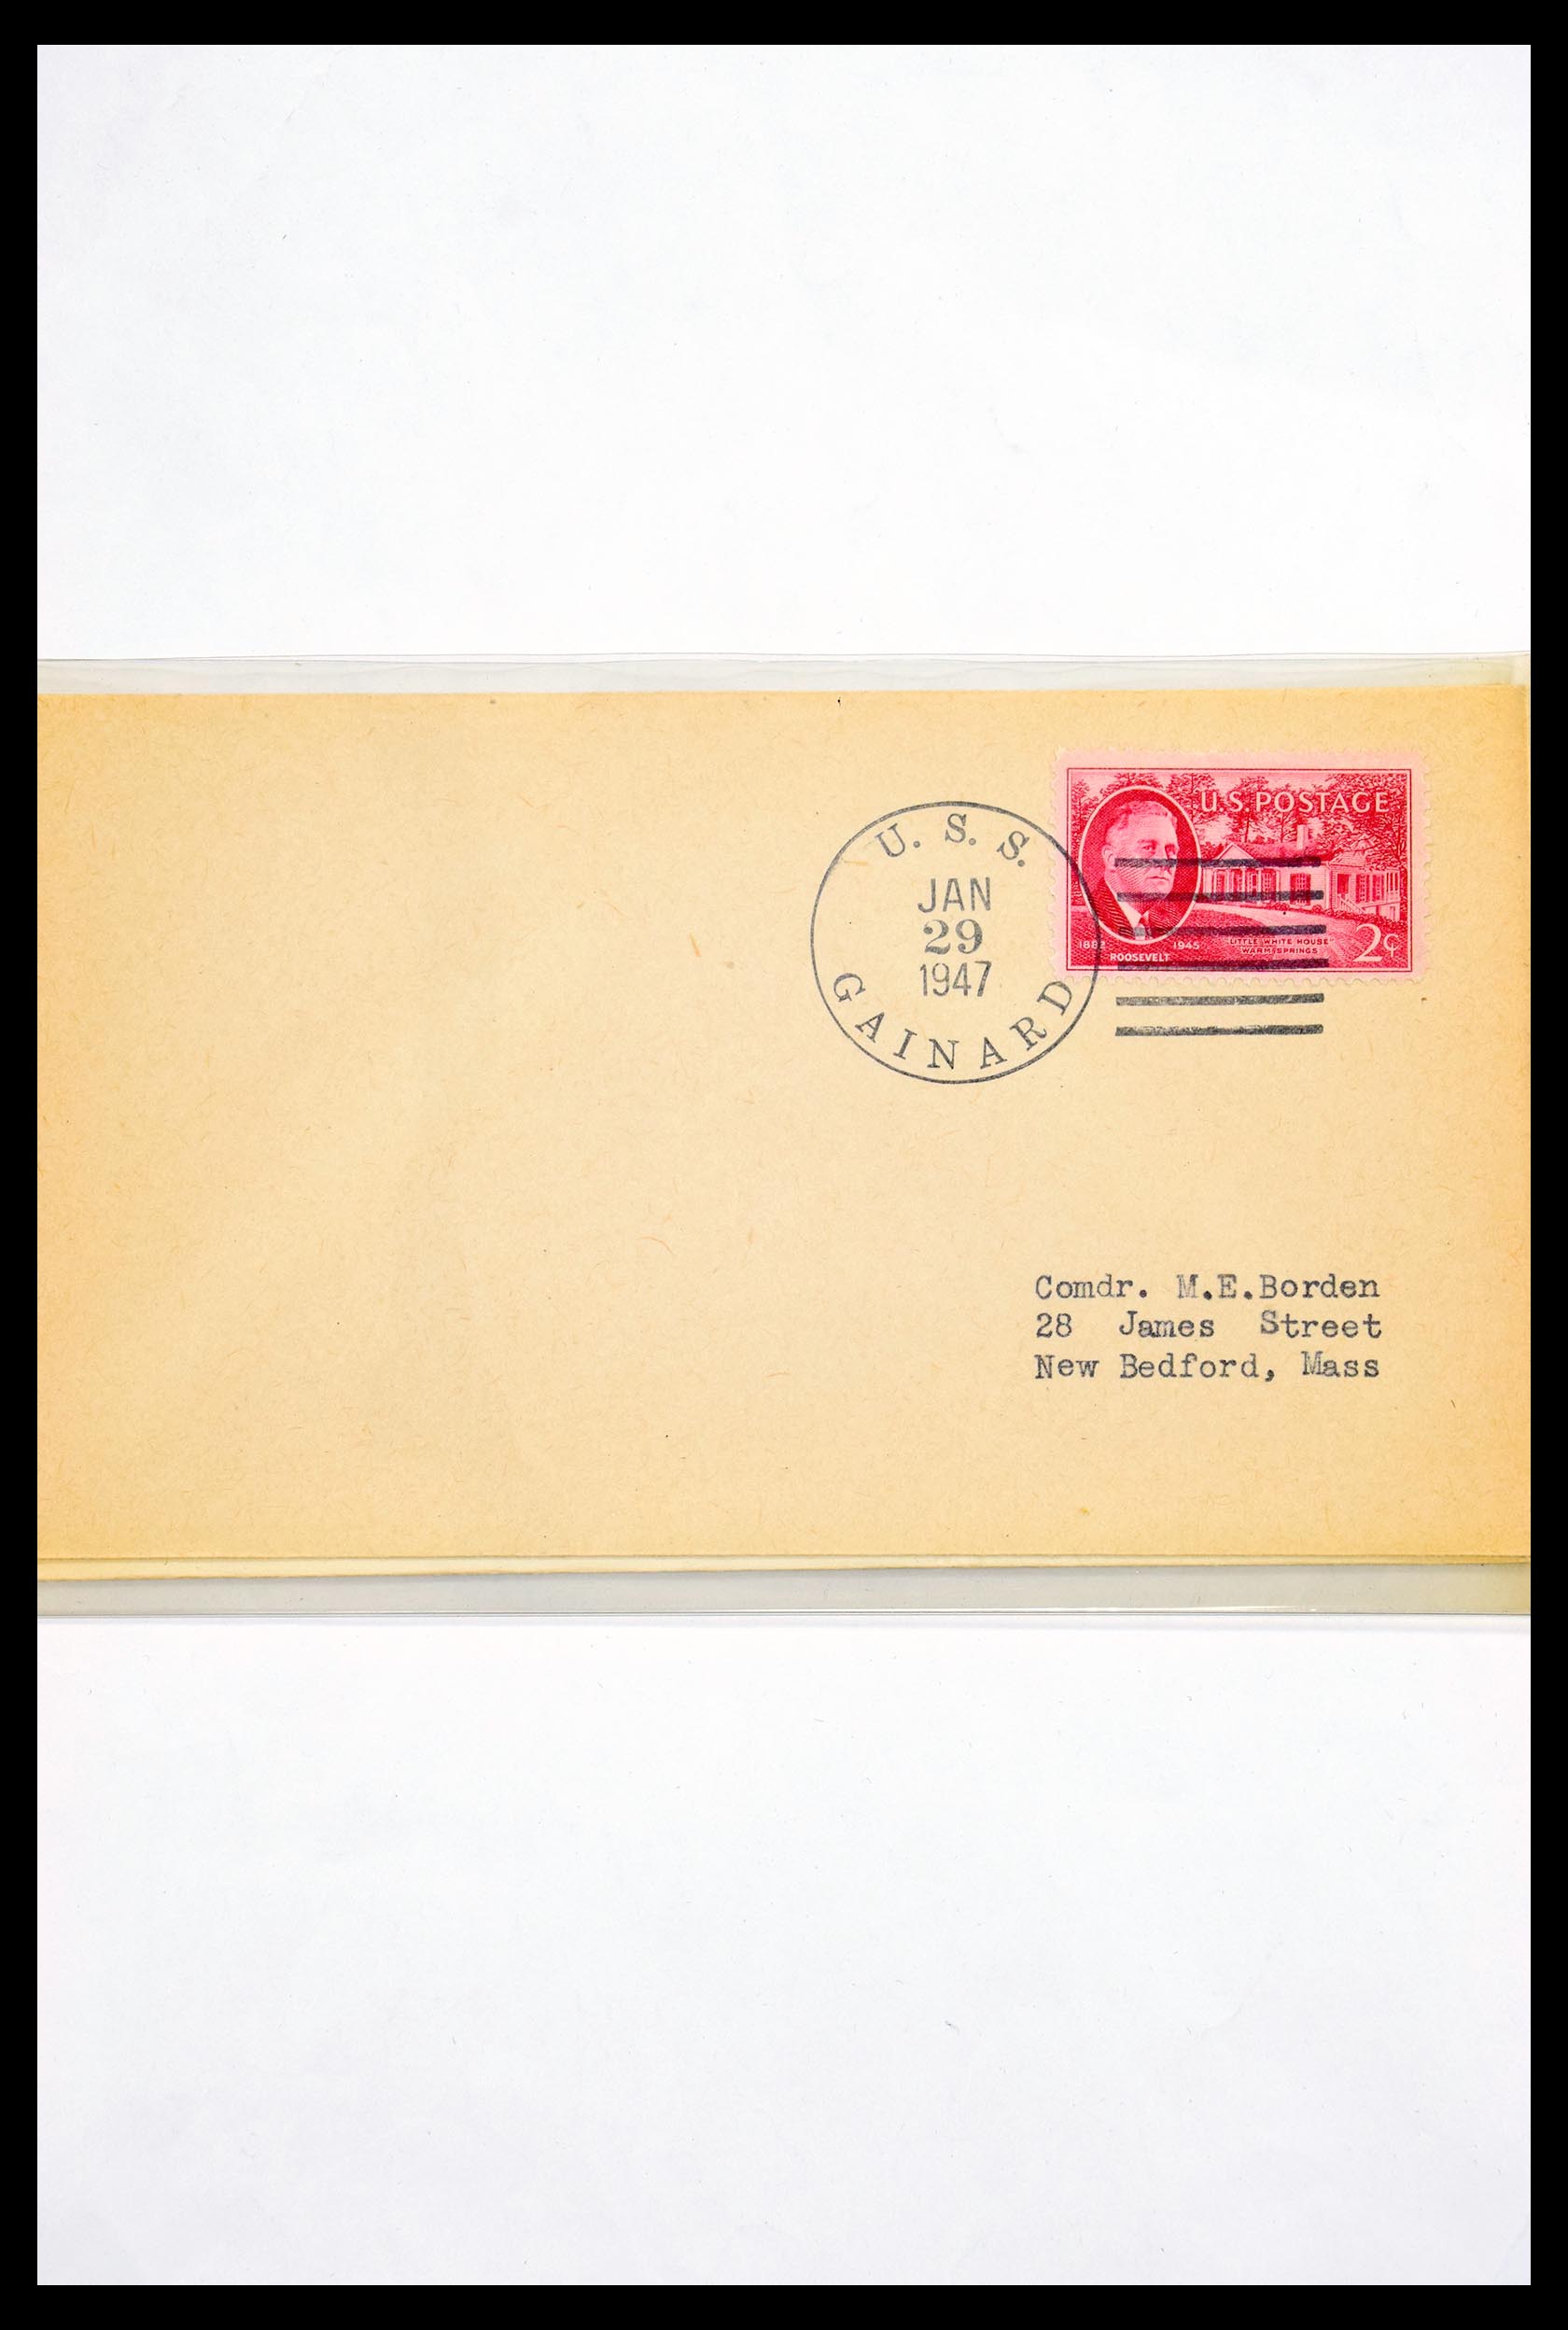 30341 306 - 30341 USA scheepspost brieven 1930-1970.